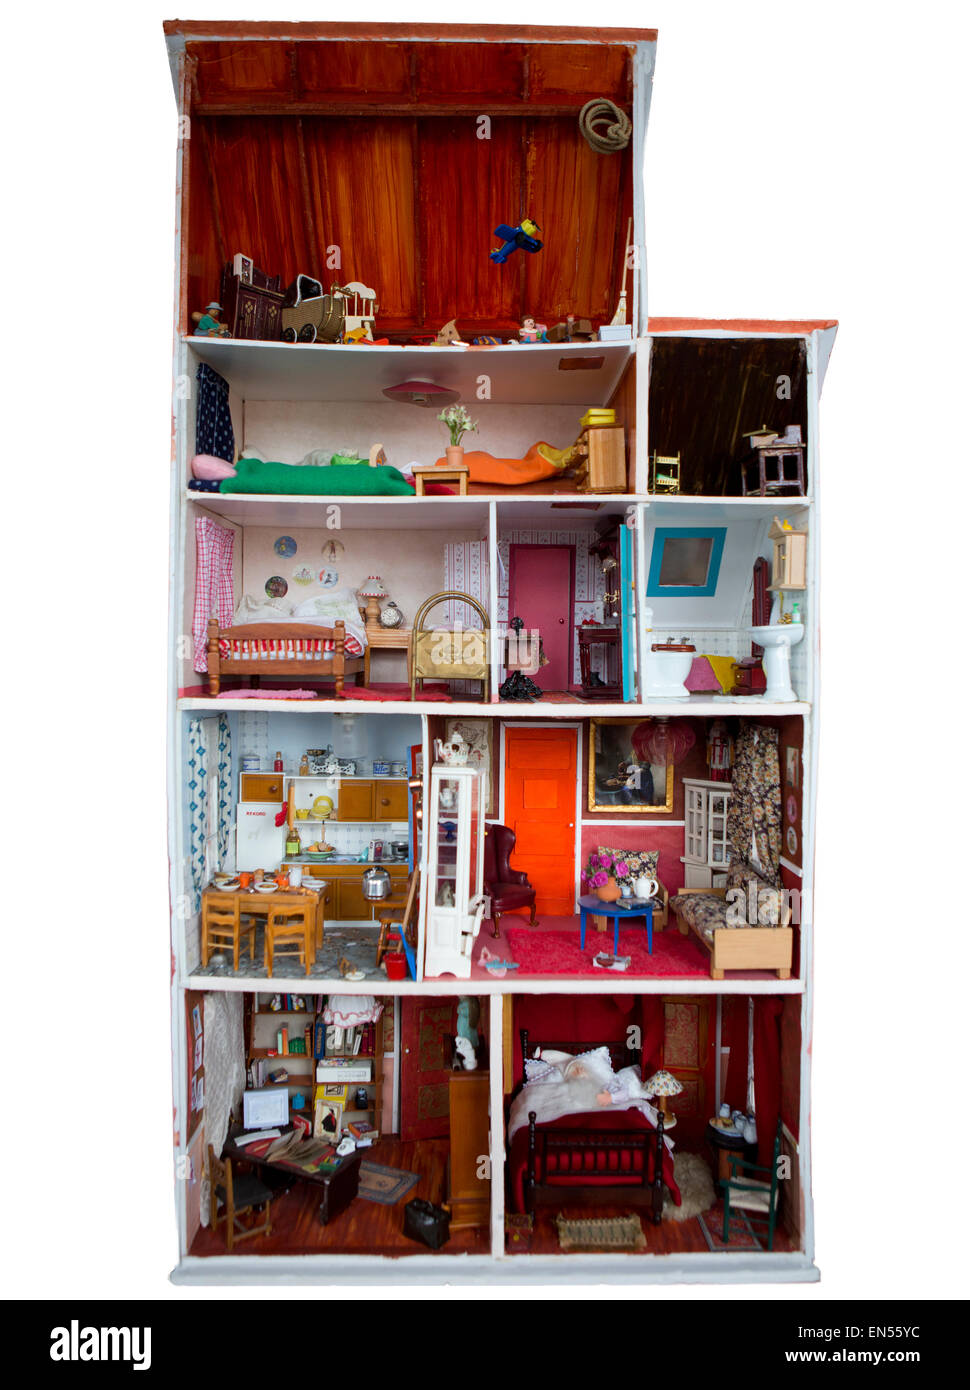 Jouets miniatures dans une maison de poupées Banque D'Images